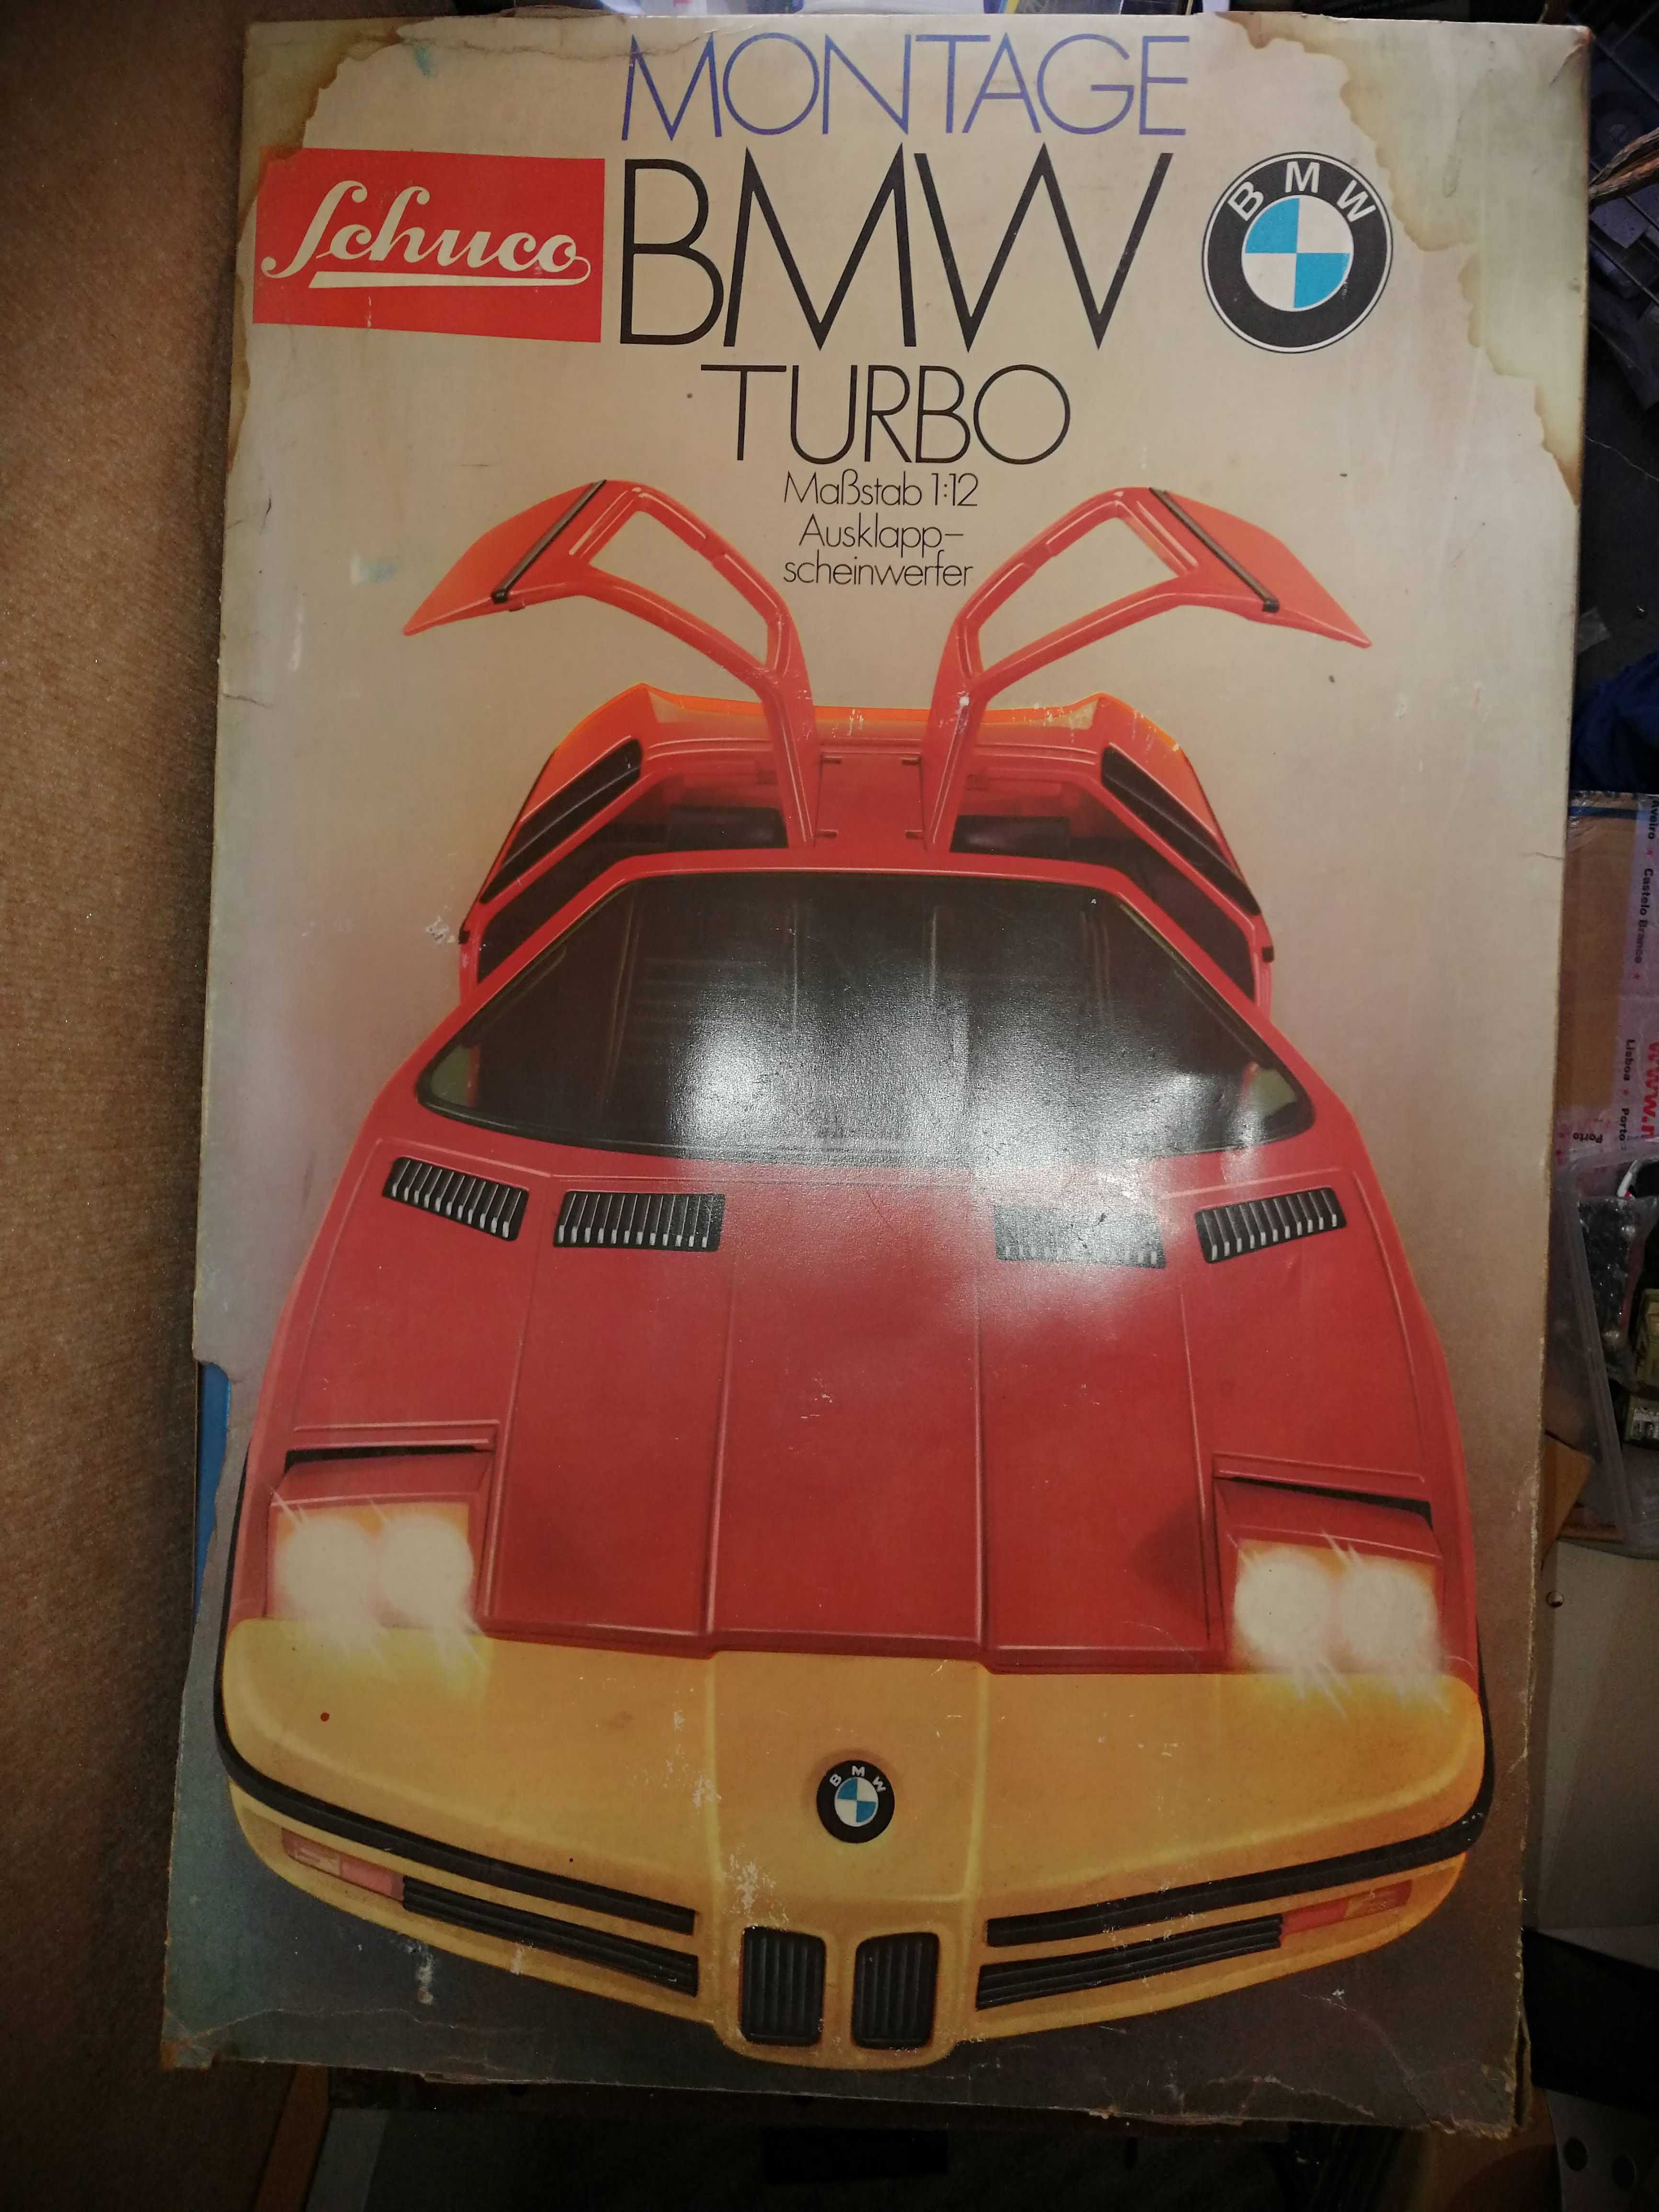 BMW Turbo - Kit Shuco - 1/12 - Vintage - Raro